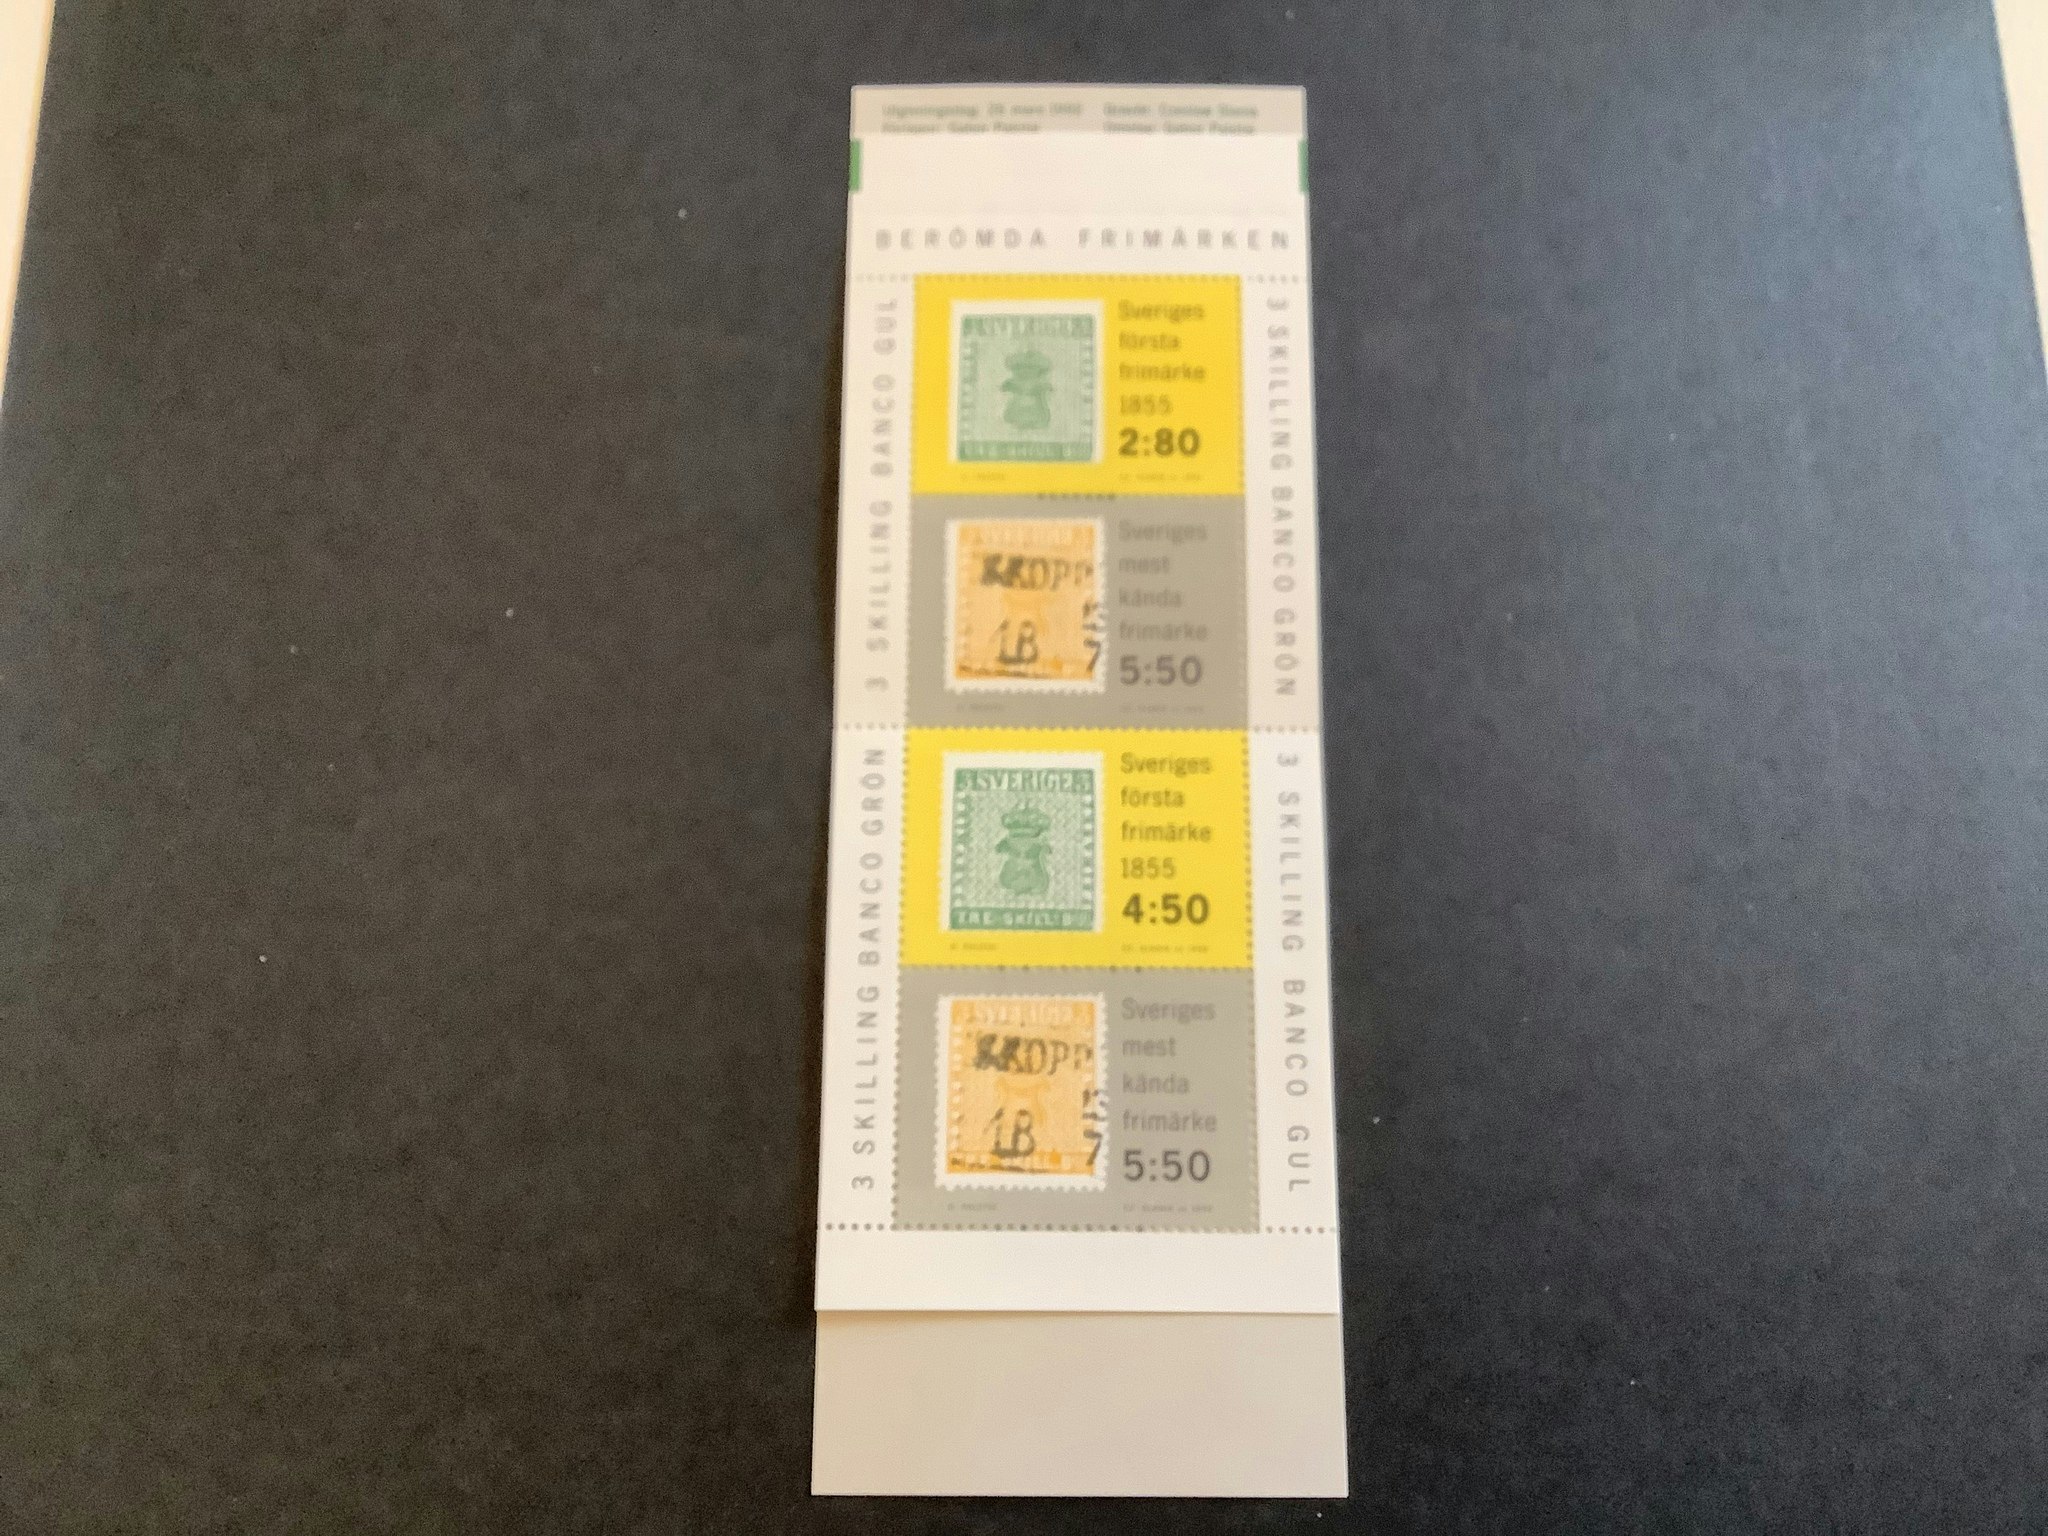 Berömda frimärken 1992 postfriskt häfte